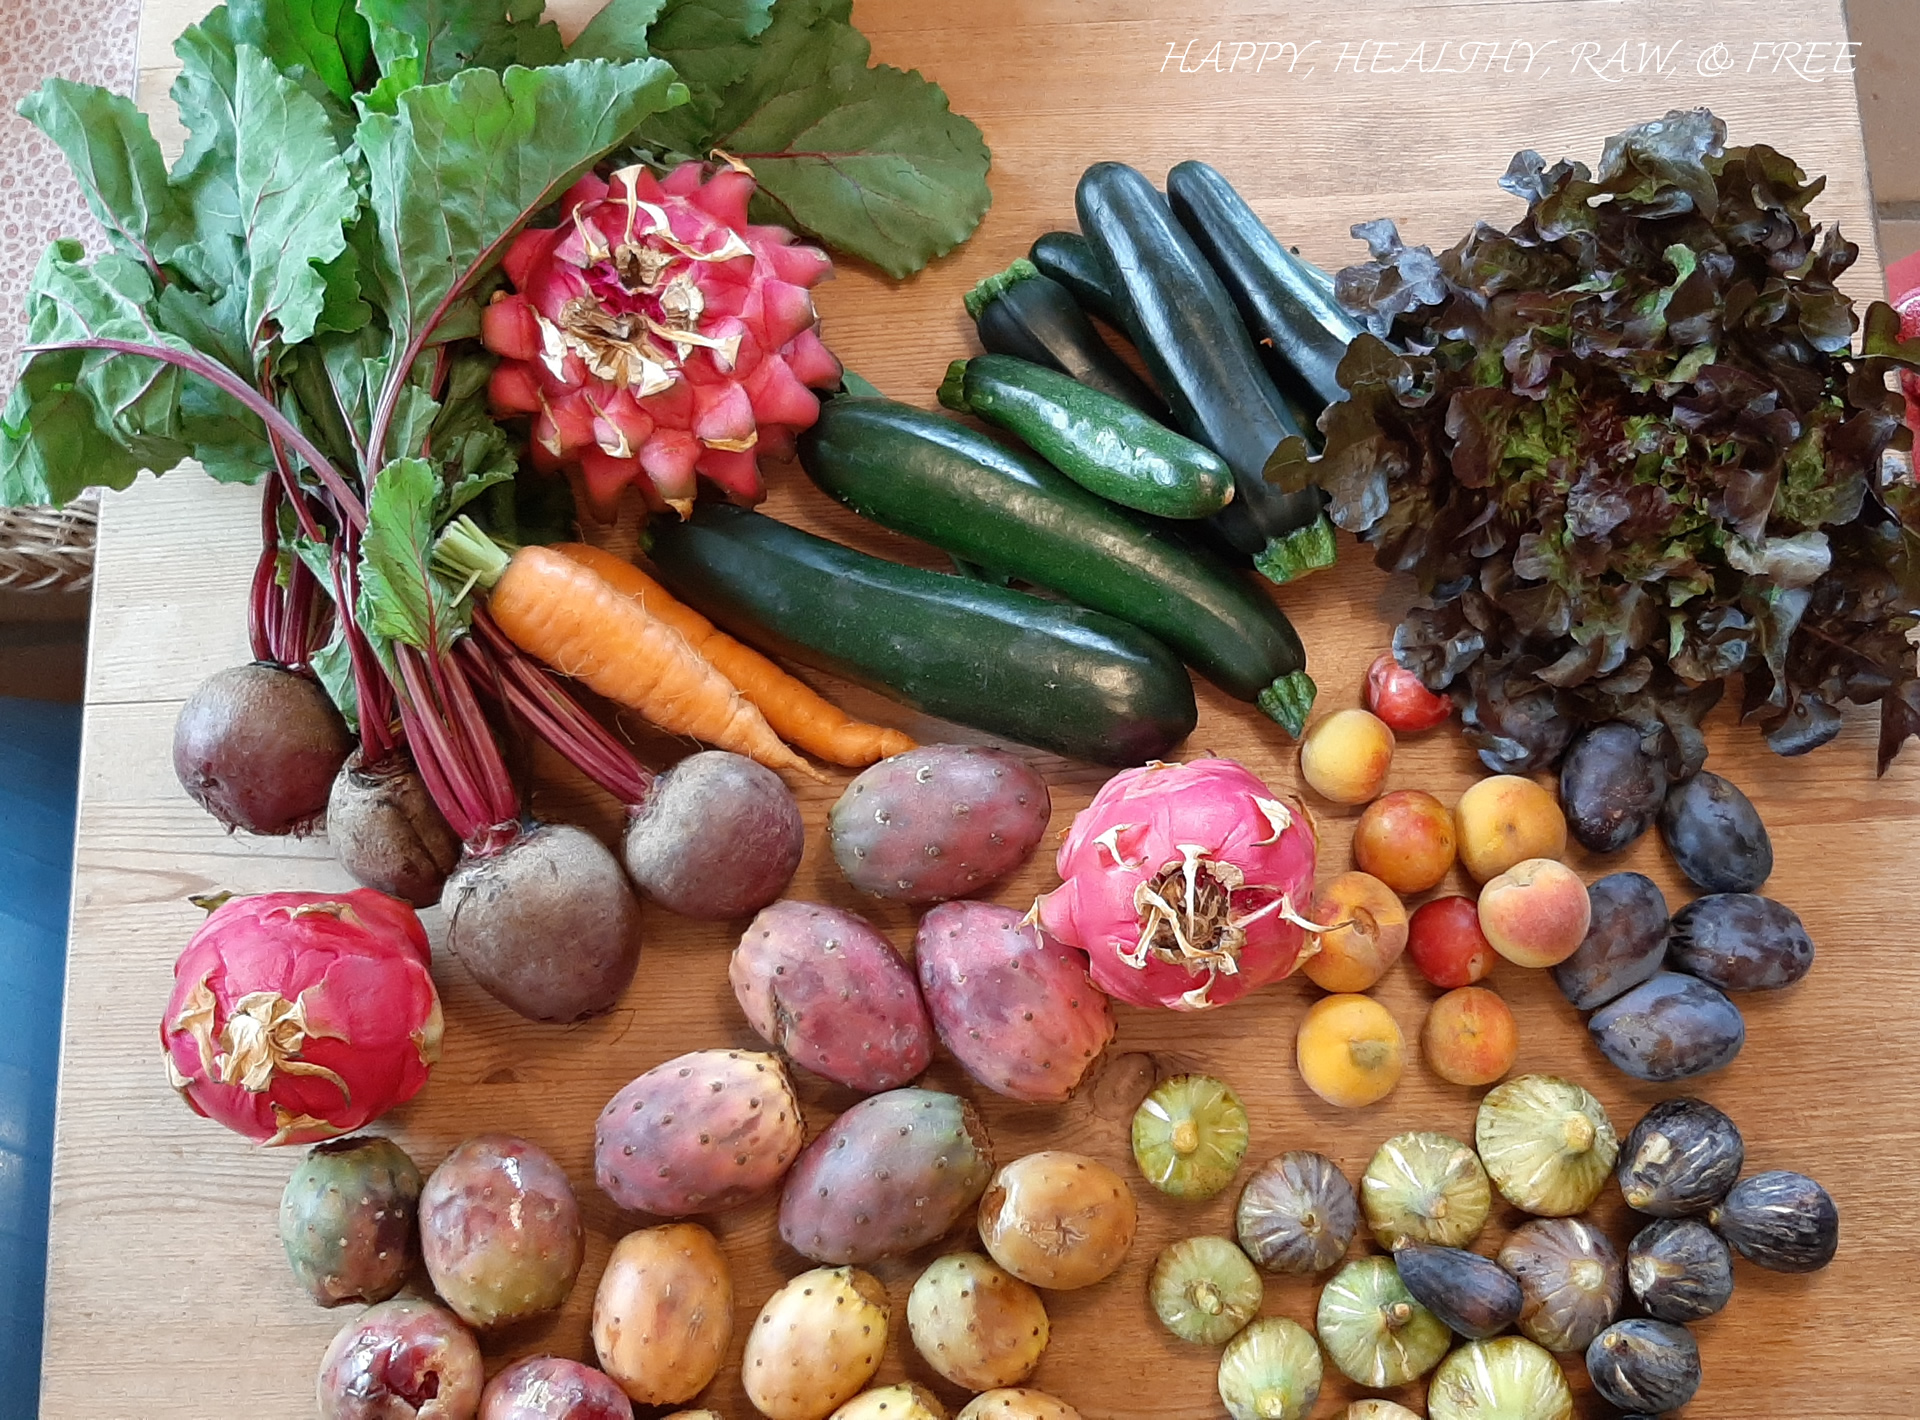 Roh veganer Wocheneinkauf auf dem Bauernmarkt - Happy Healthy Raw & Free